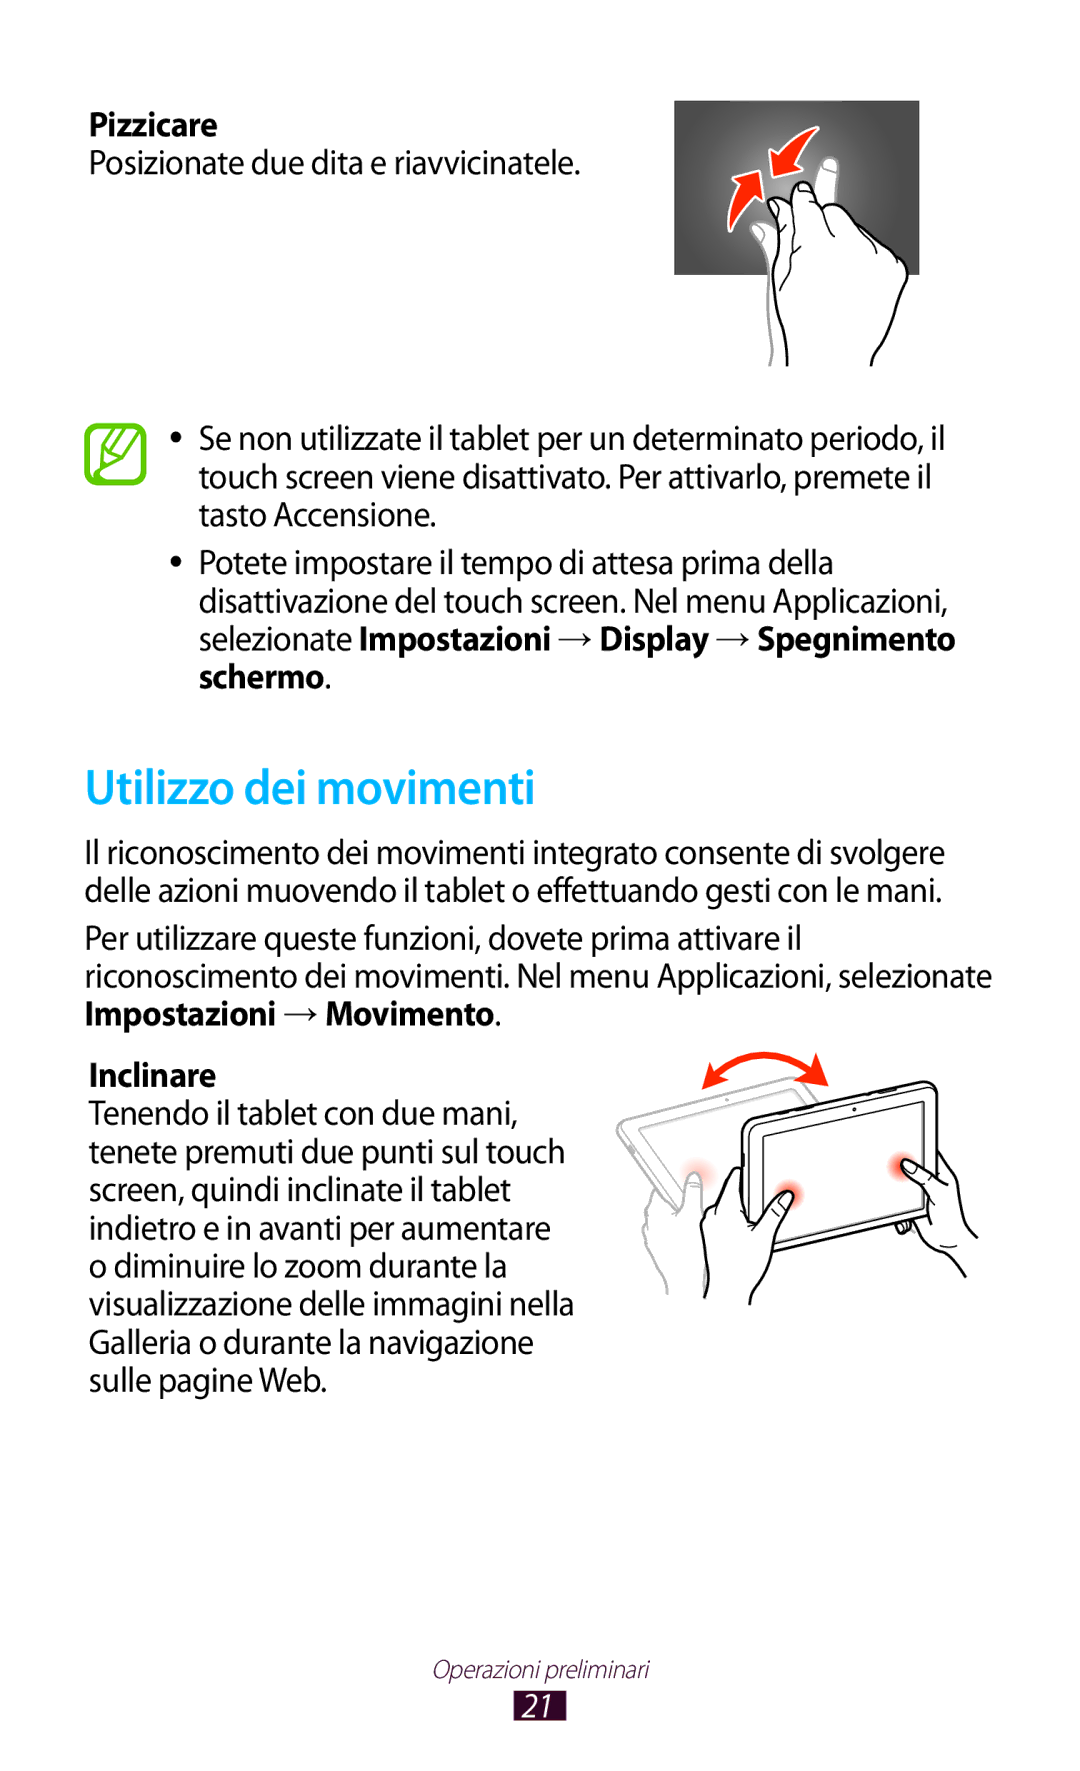 Samsung GT-P7500UWDFWB manual Utilizzo dei movimenti, Pizzicare, Selezionate Impostazioni → Display → Spegnimento schermo 